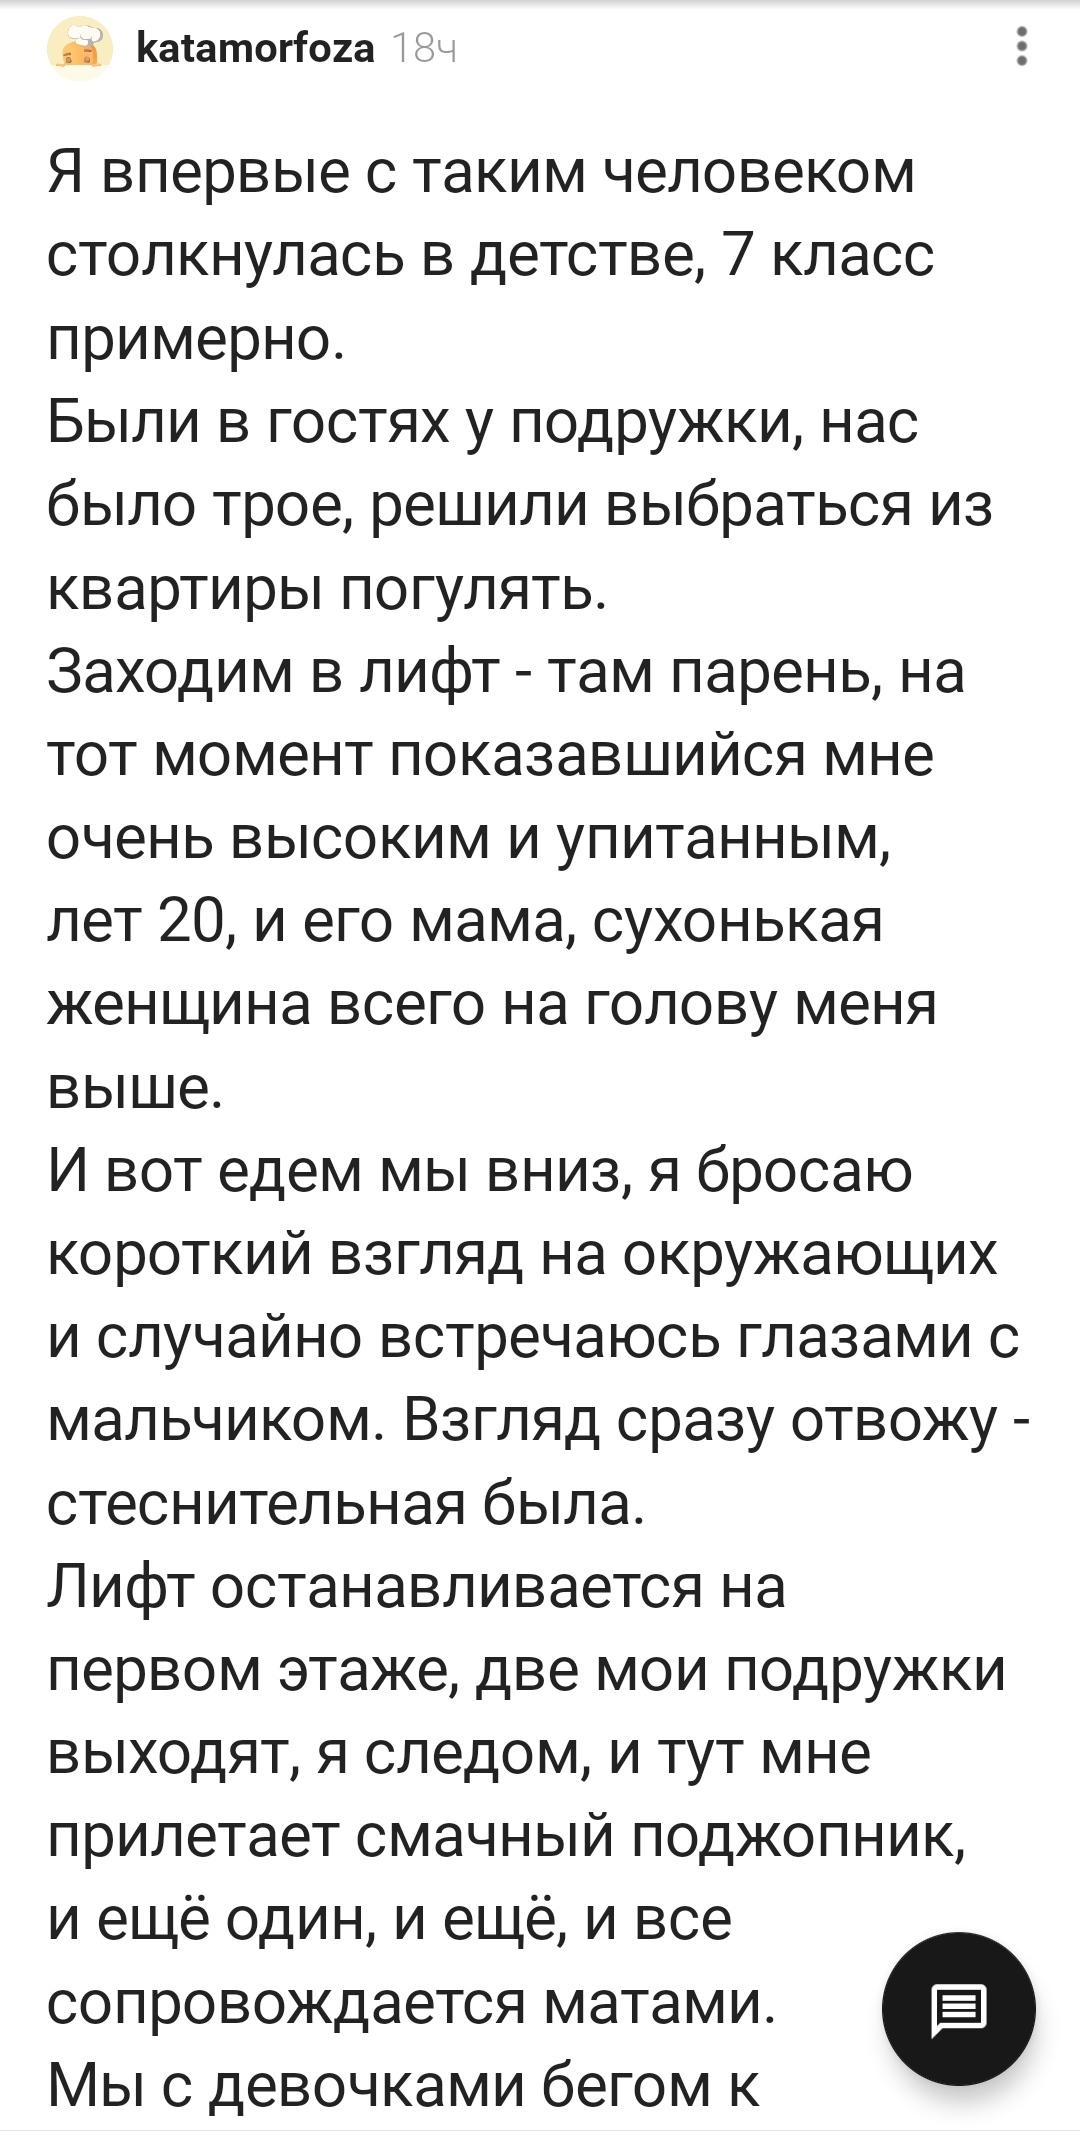 Дмитрий Потапенко: «Владимир Владимирович еще ближайшие 15 лет будет править страной»